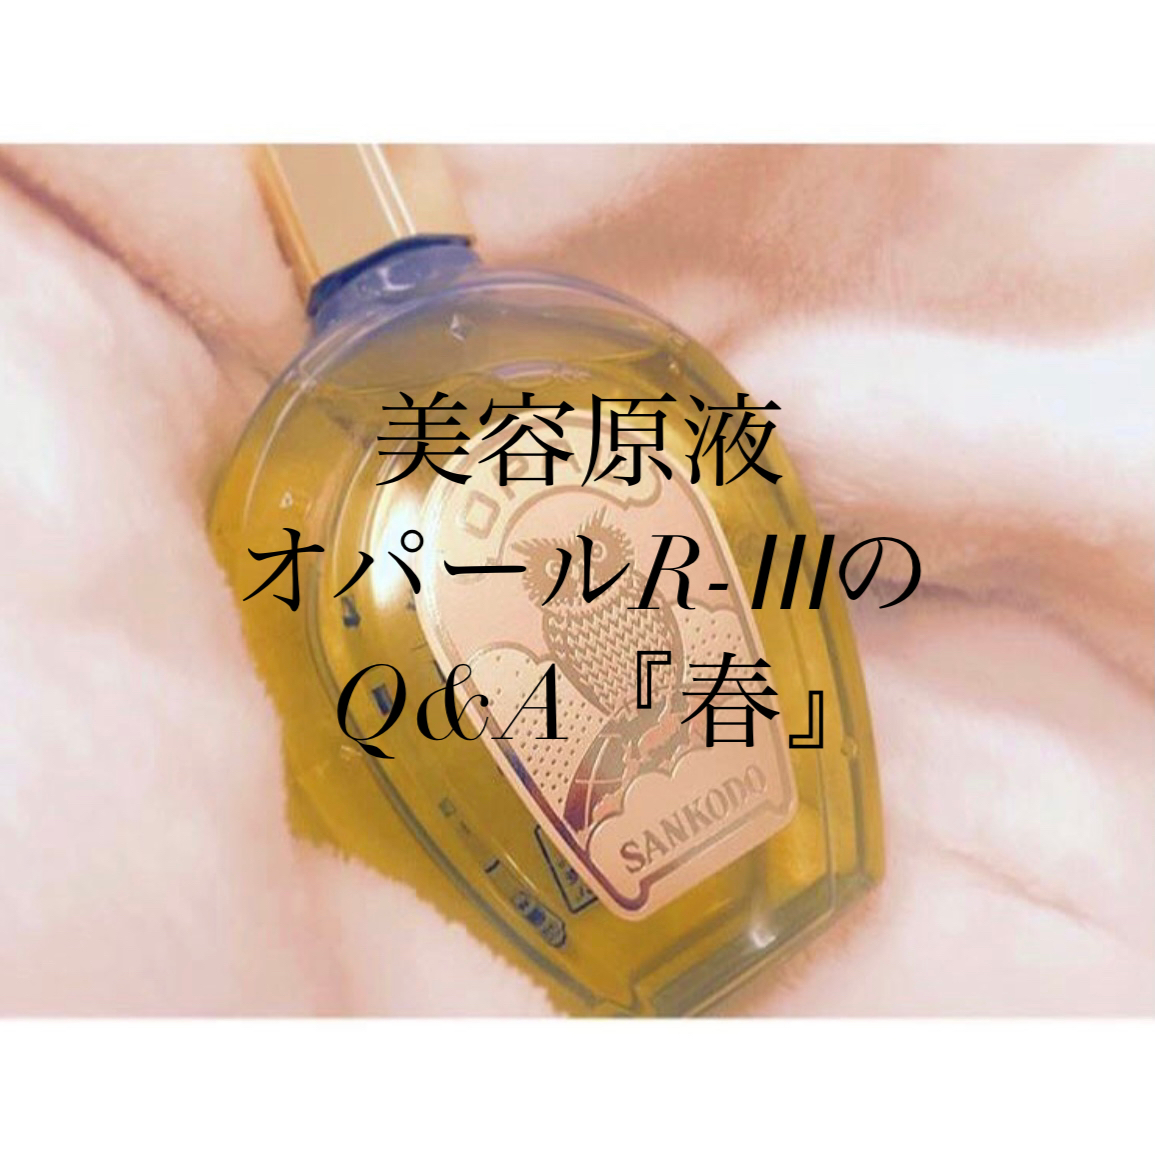 美容原液オパールR-ⅢのQ&A 『春』 | 兵庫県三田市の肌質改善